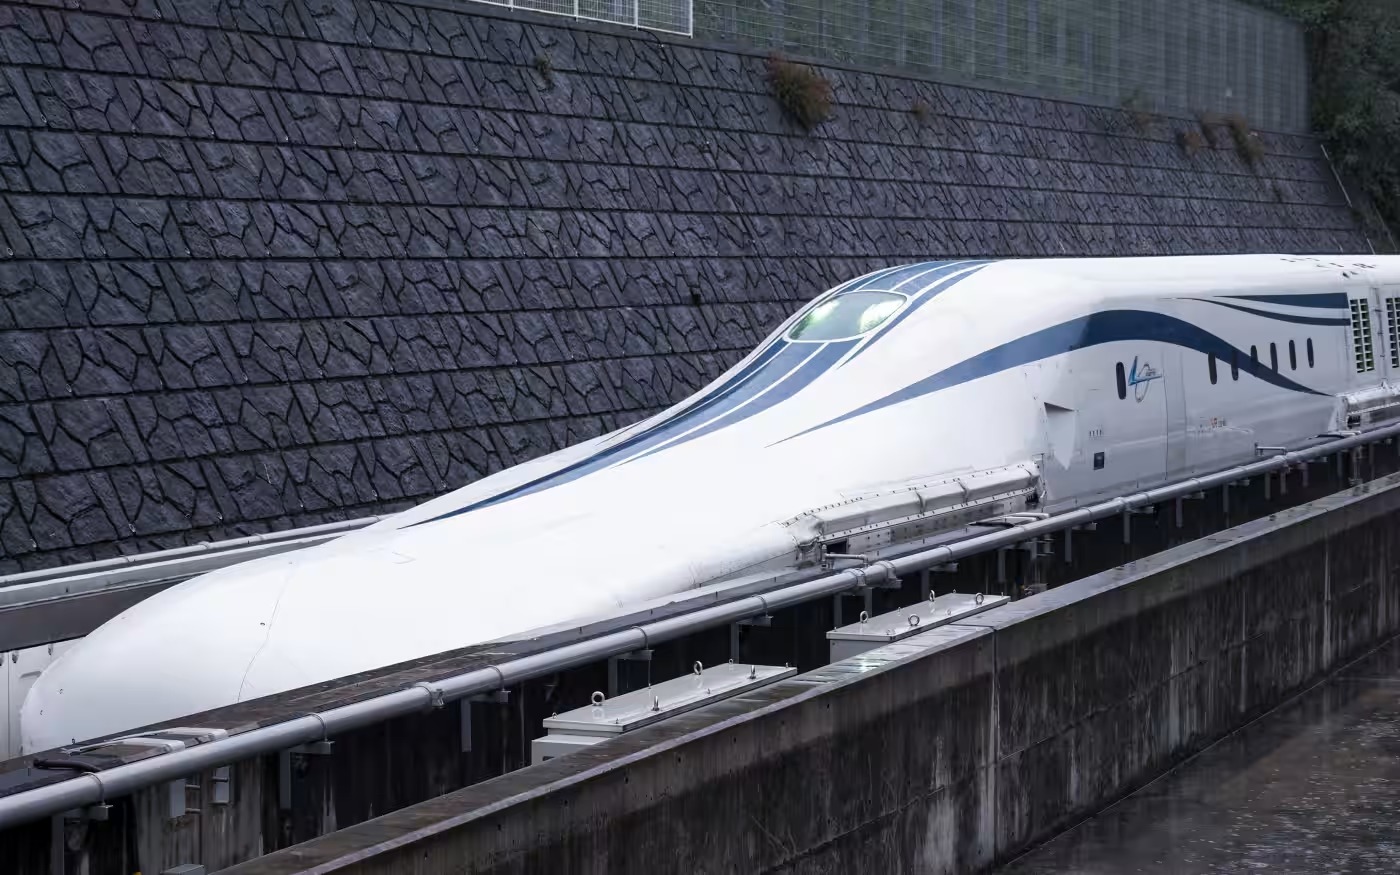 Dự án Linear Chuo Shinkansen là dự án tàu đệm từ kết nối thủ đô Tokyo và TP. Osaka, sử dụng các đoàn tàu đệm từ có tốc độ vận hành lên tới 500 km/h. (Ảnh: Nikkei Asia)